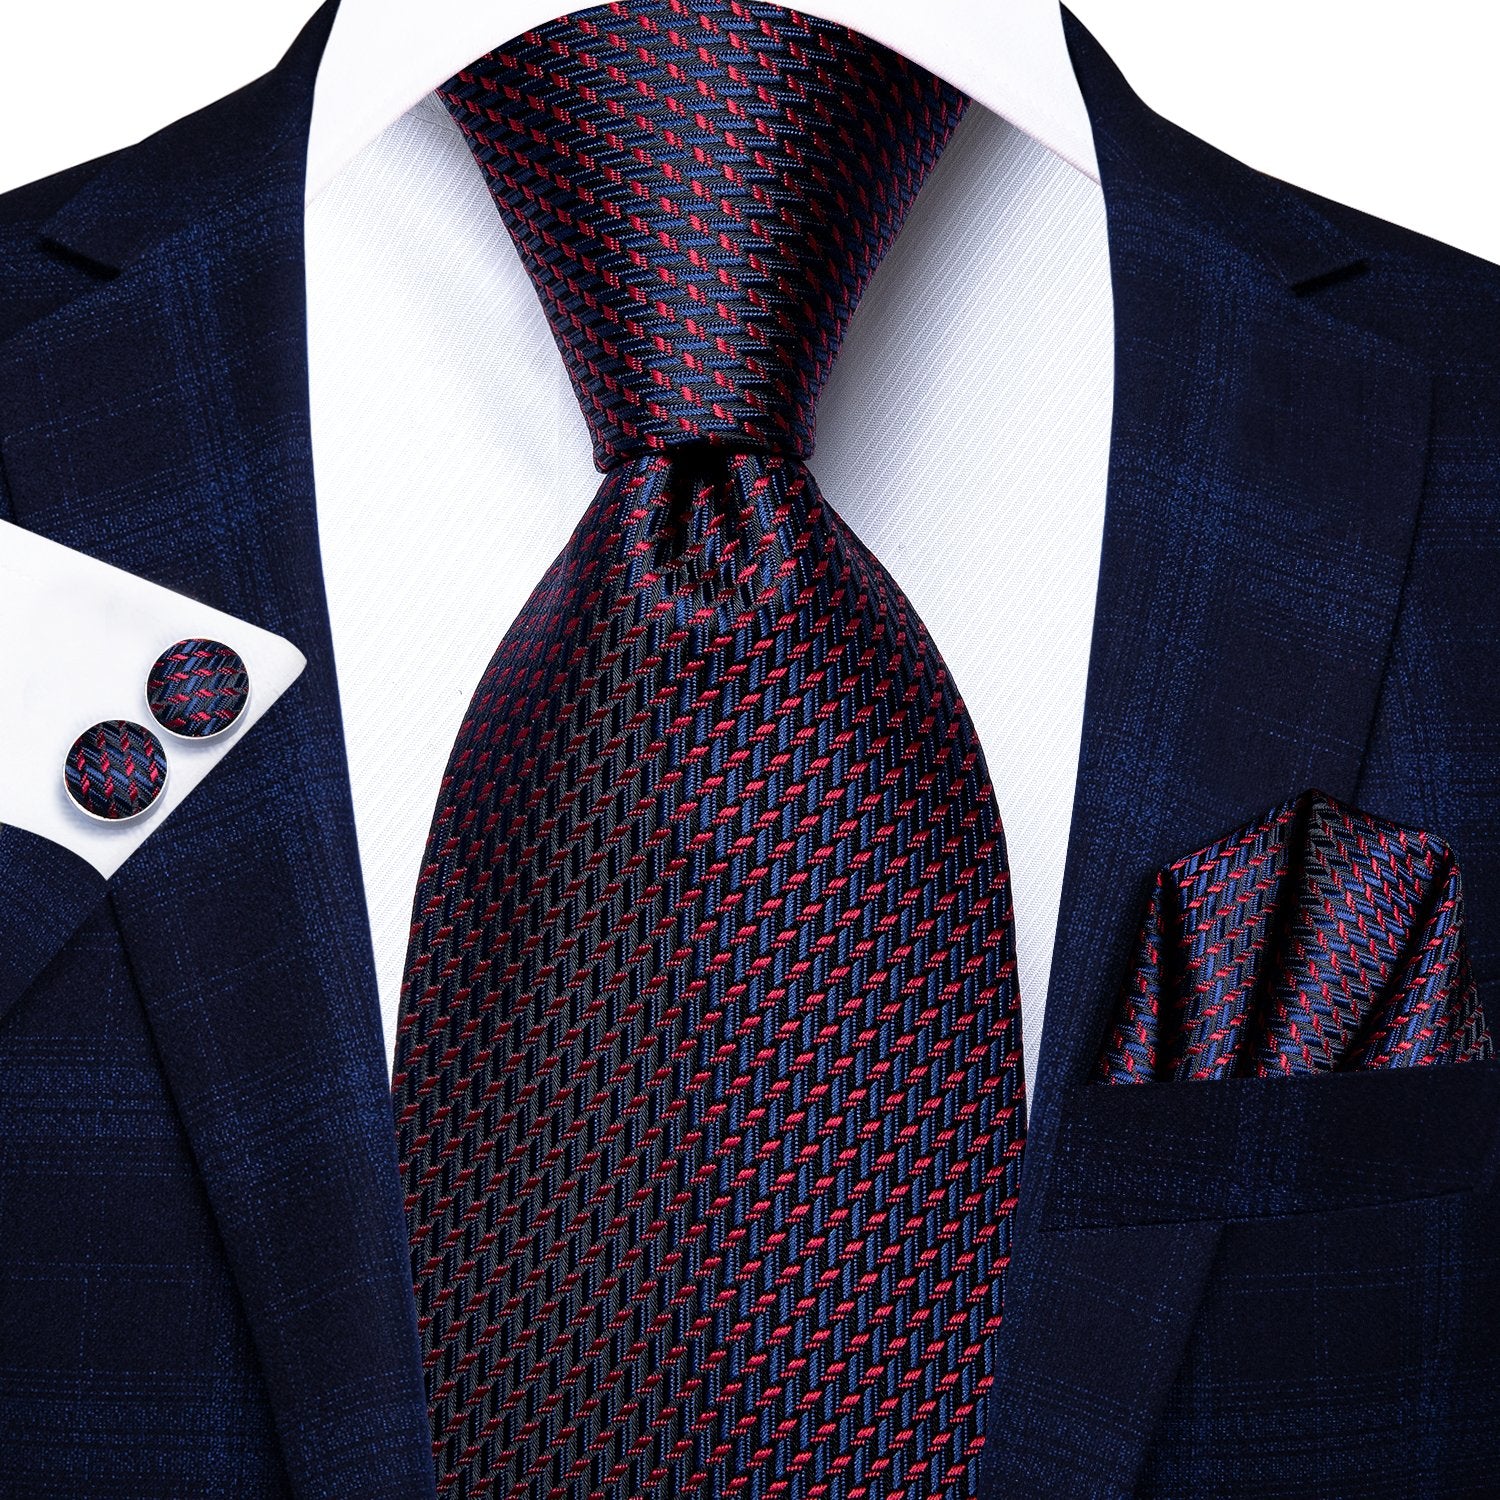 Blue Red Striped Tie Handkerchief Cufflinks Set with Wedding Brooch